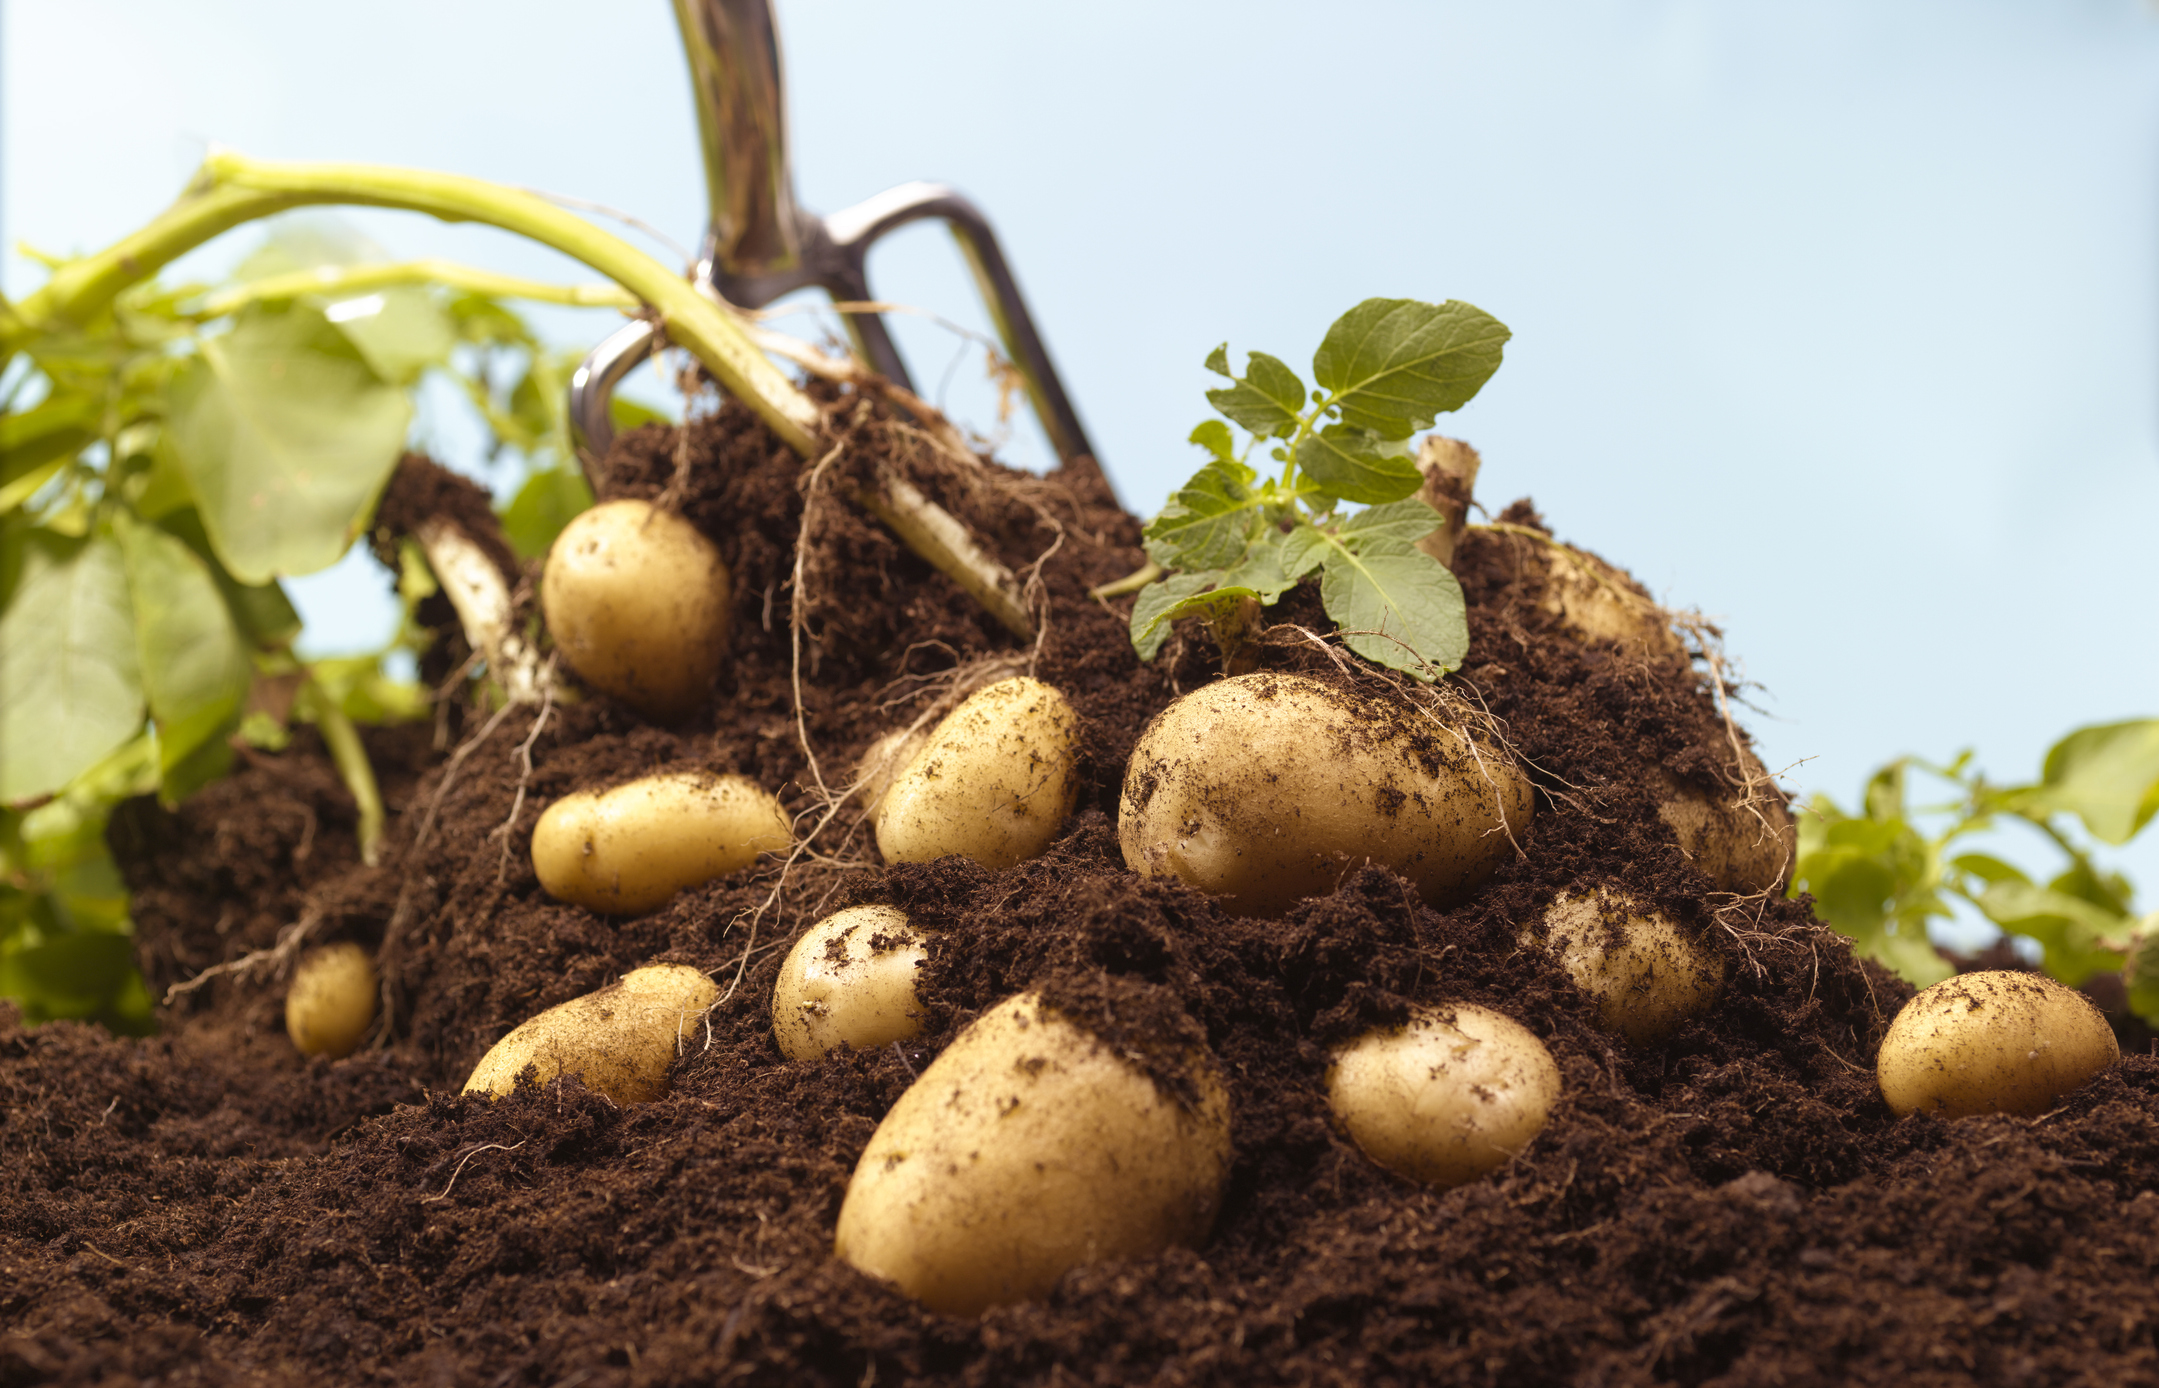 Titkos krumpli termesztési trükk! 1 gumóból 40 vödör krumplid is lehet!